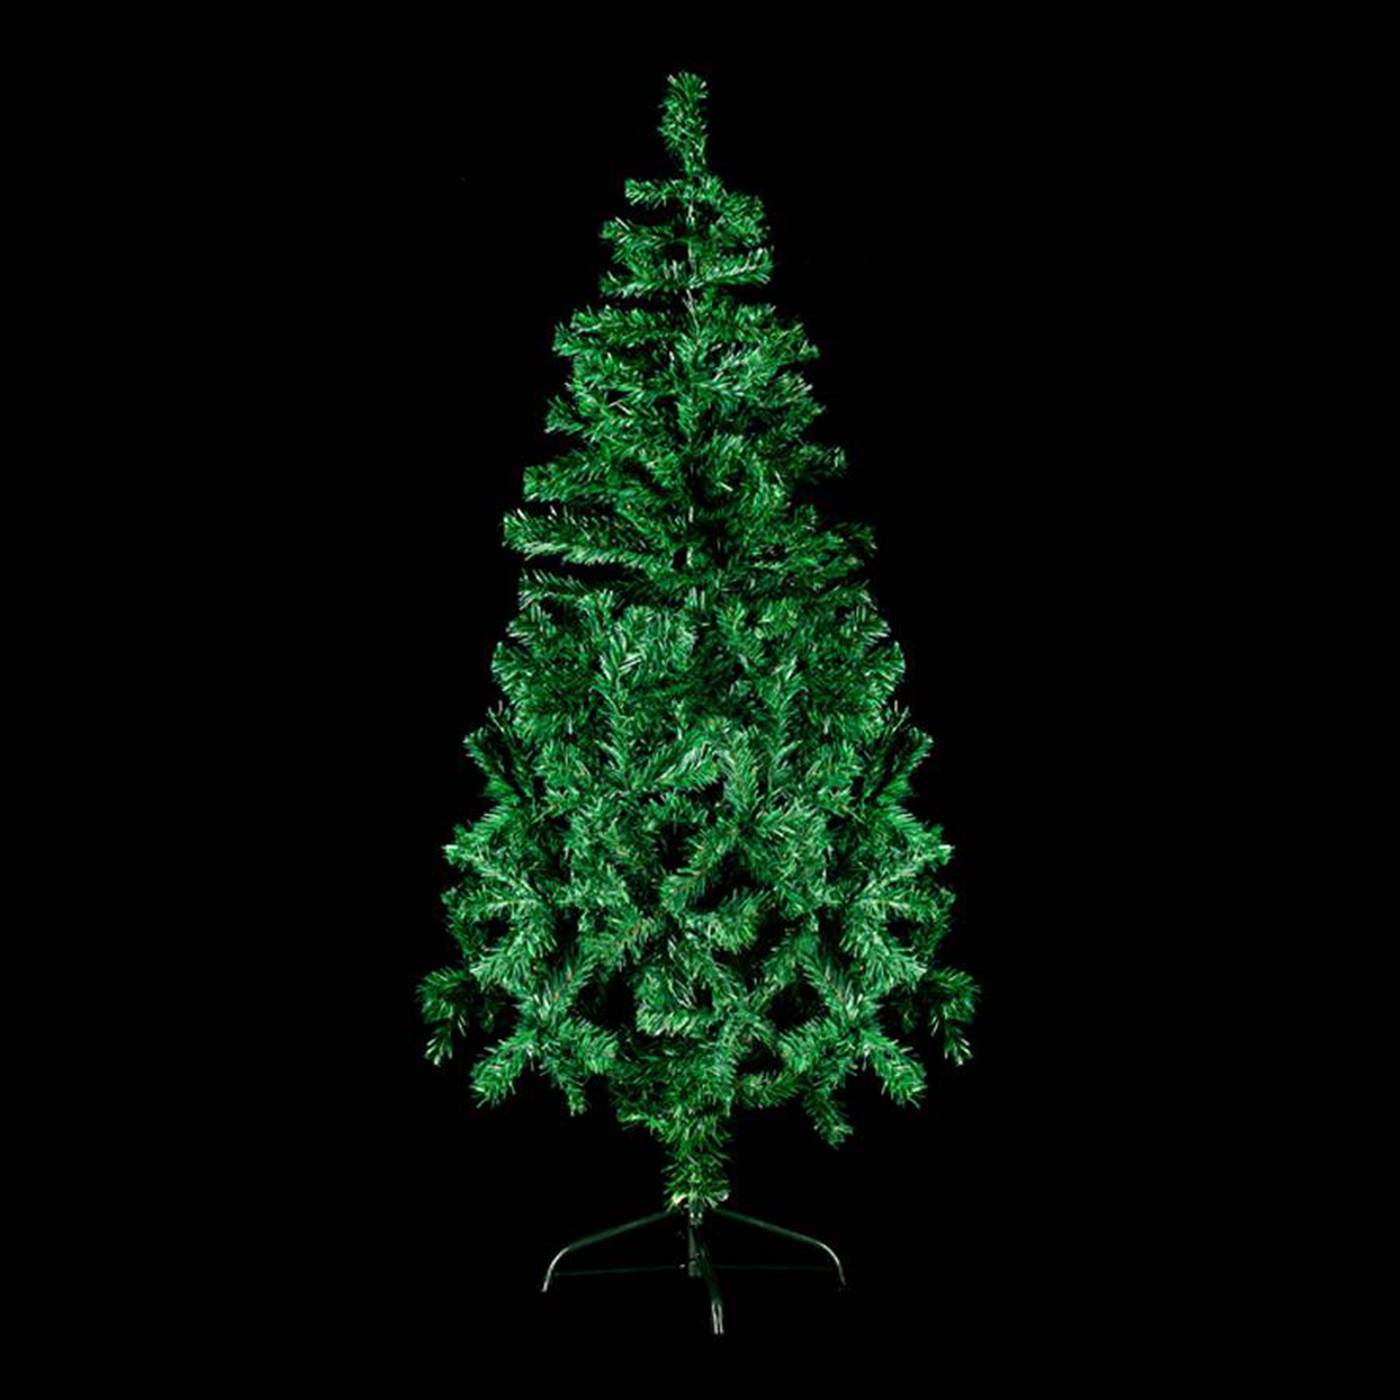 Goedkope groene kerstboom 150cm kopen